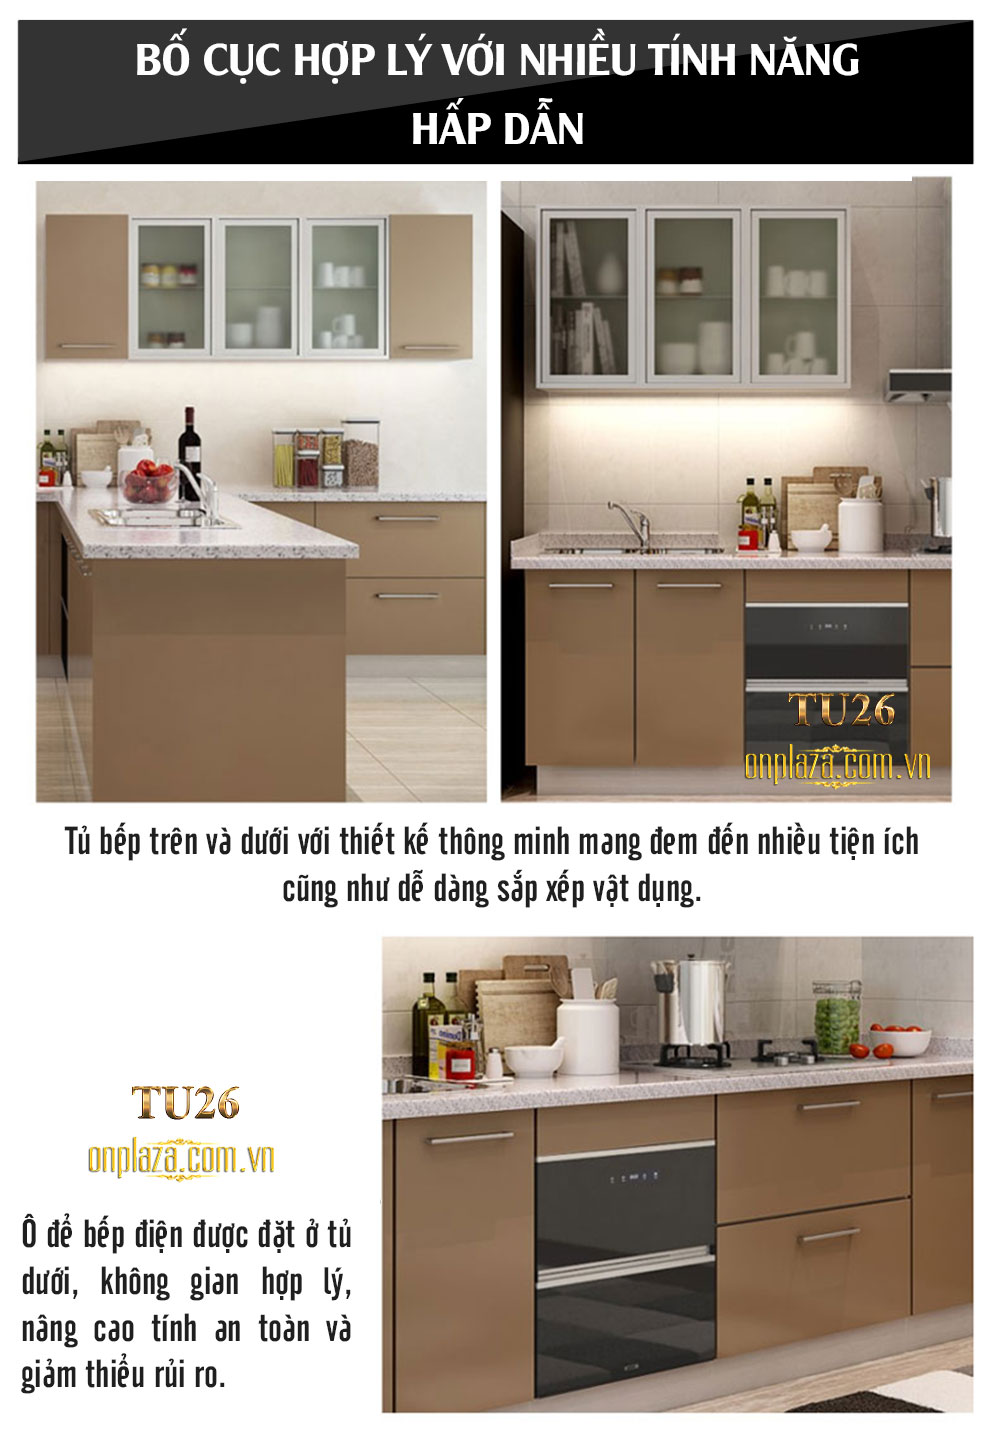 Tủ bếp thiết kế cao cấp cho phòng bếp sang trọng TU26